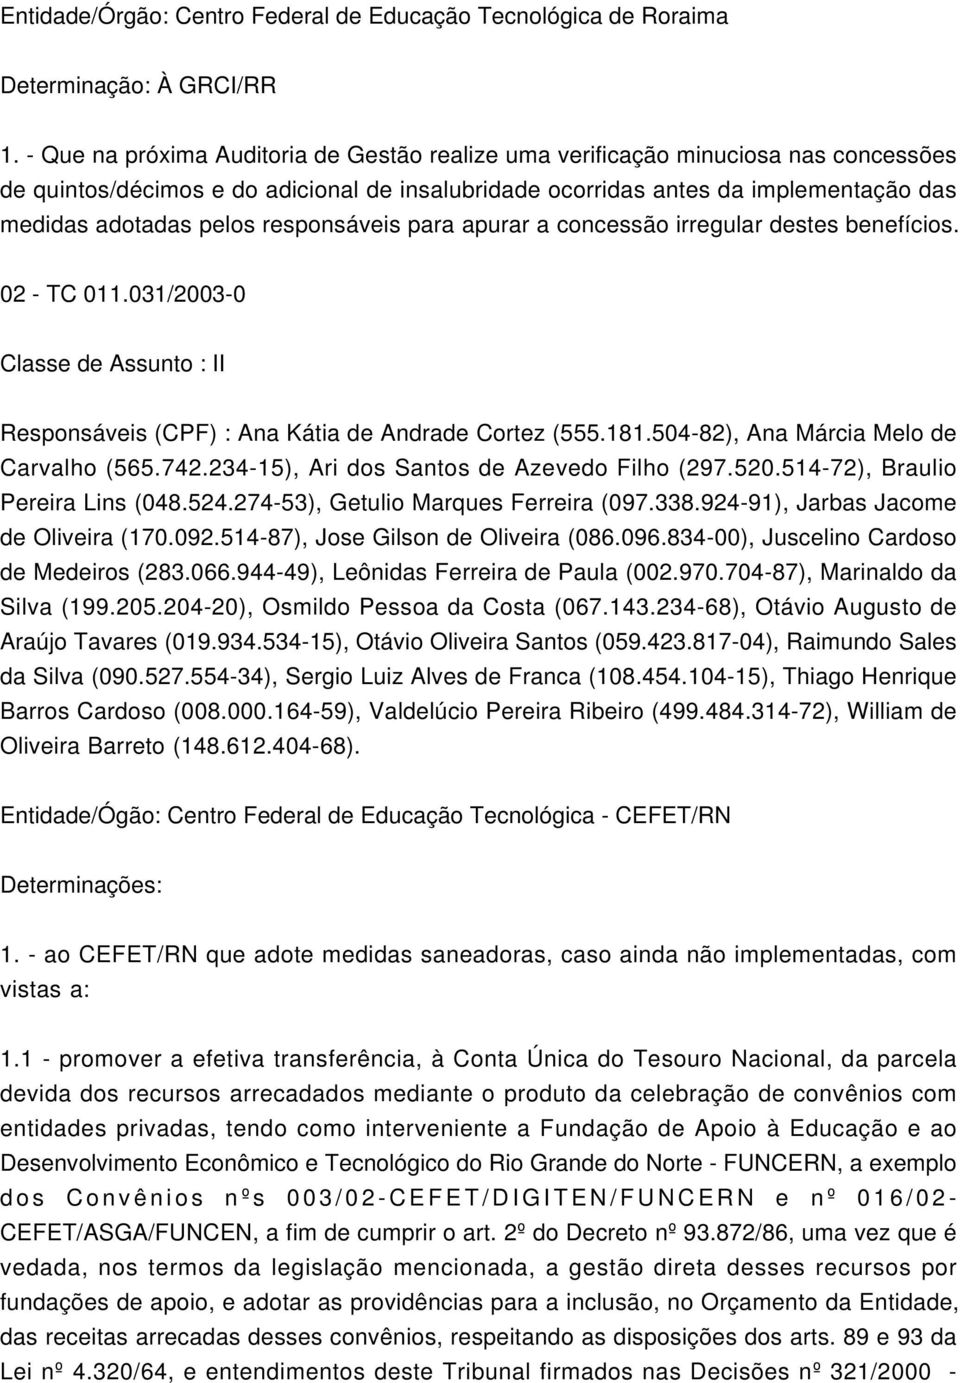 responsáveis para apurar a concessão irregular destes benefícios. 02 - TC 011.031/2003-0 Classe de Assunto : II Responsáveis (CPF) : Ana Kátia de Andrade Cortez (555.181.